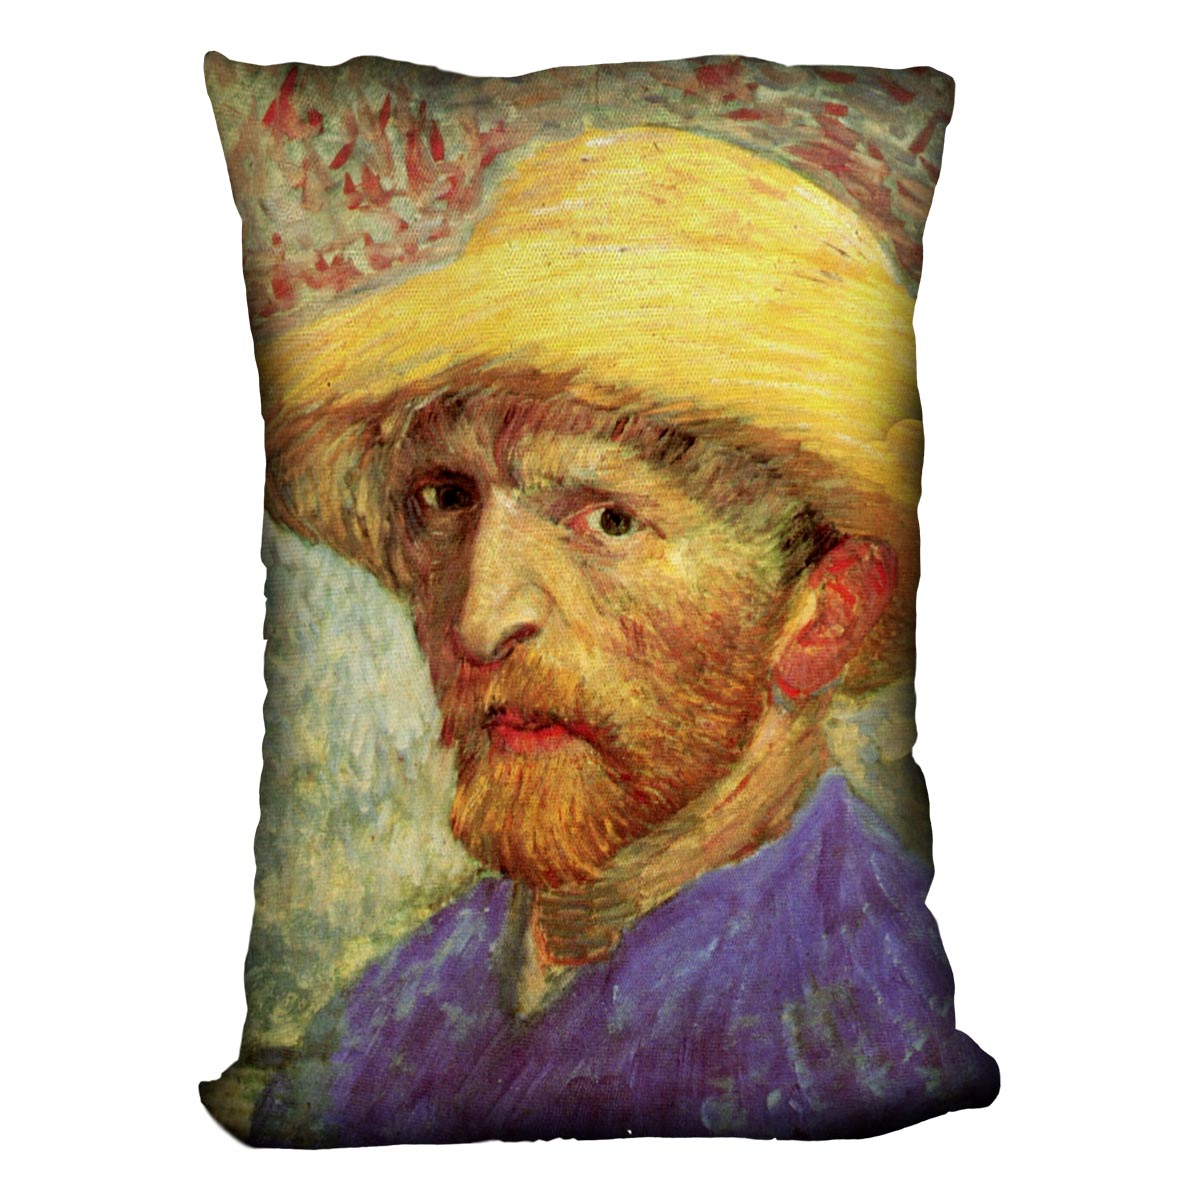 Self-Portrait with Straw Hat 3 by Van Gogh Cushion